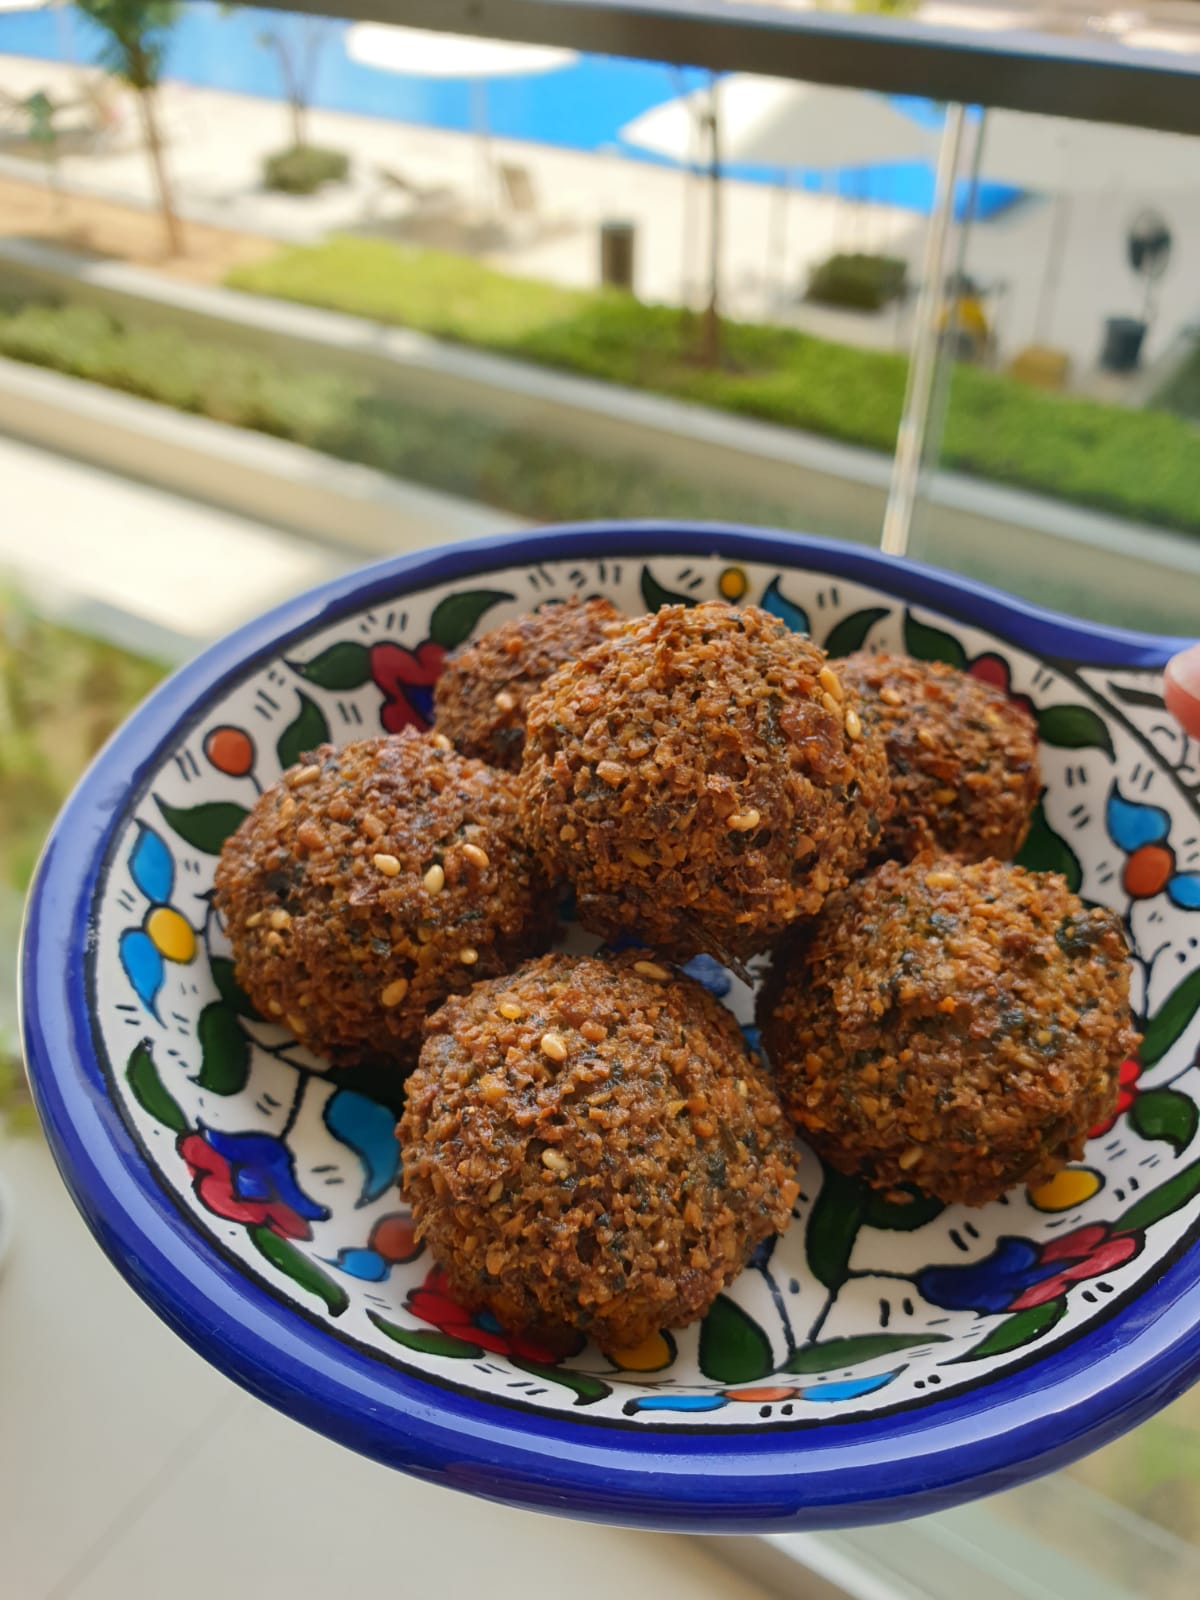 KAVE – Falafel Pop Up By Haya’s Kitchen